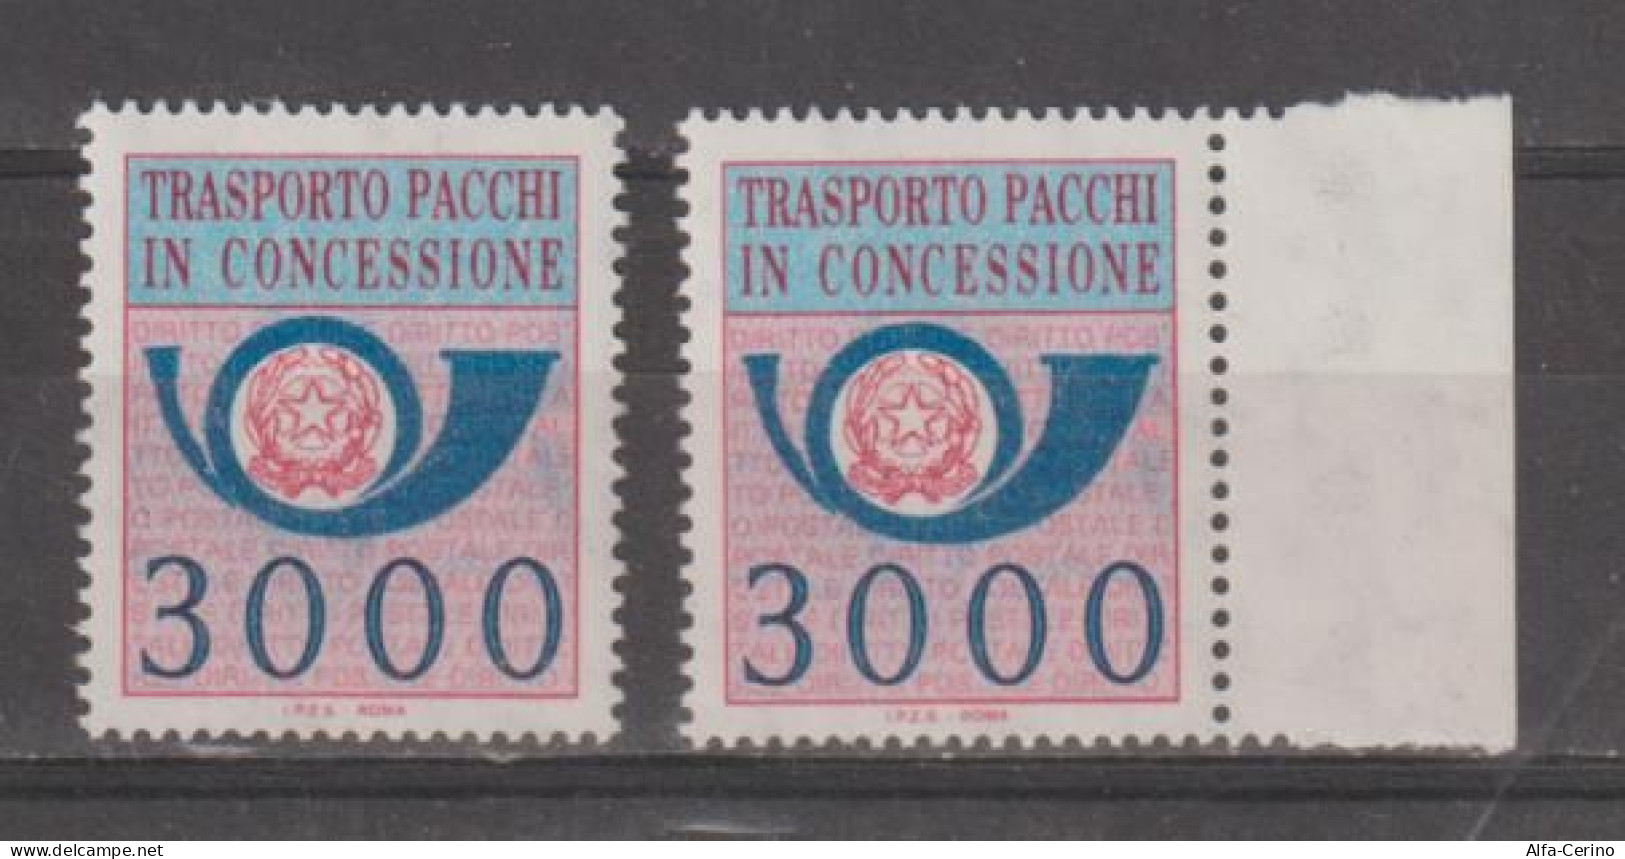 REPUBBLICA: 1984  PACCHI  IN  CONCESSIONE  -  £. 3.000  AZZURRO  E  ROSA  LILLA  N. -  RIPETUTO  2  VOLTE  - SASS. 22 - Colis-concession